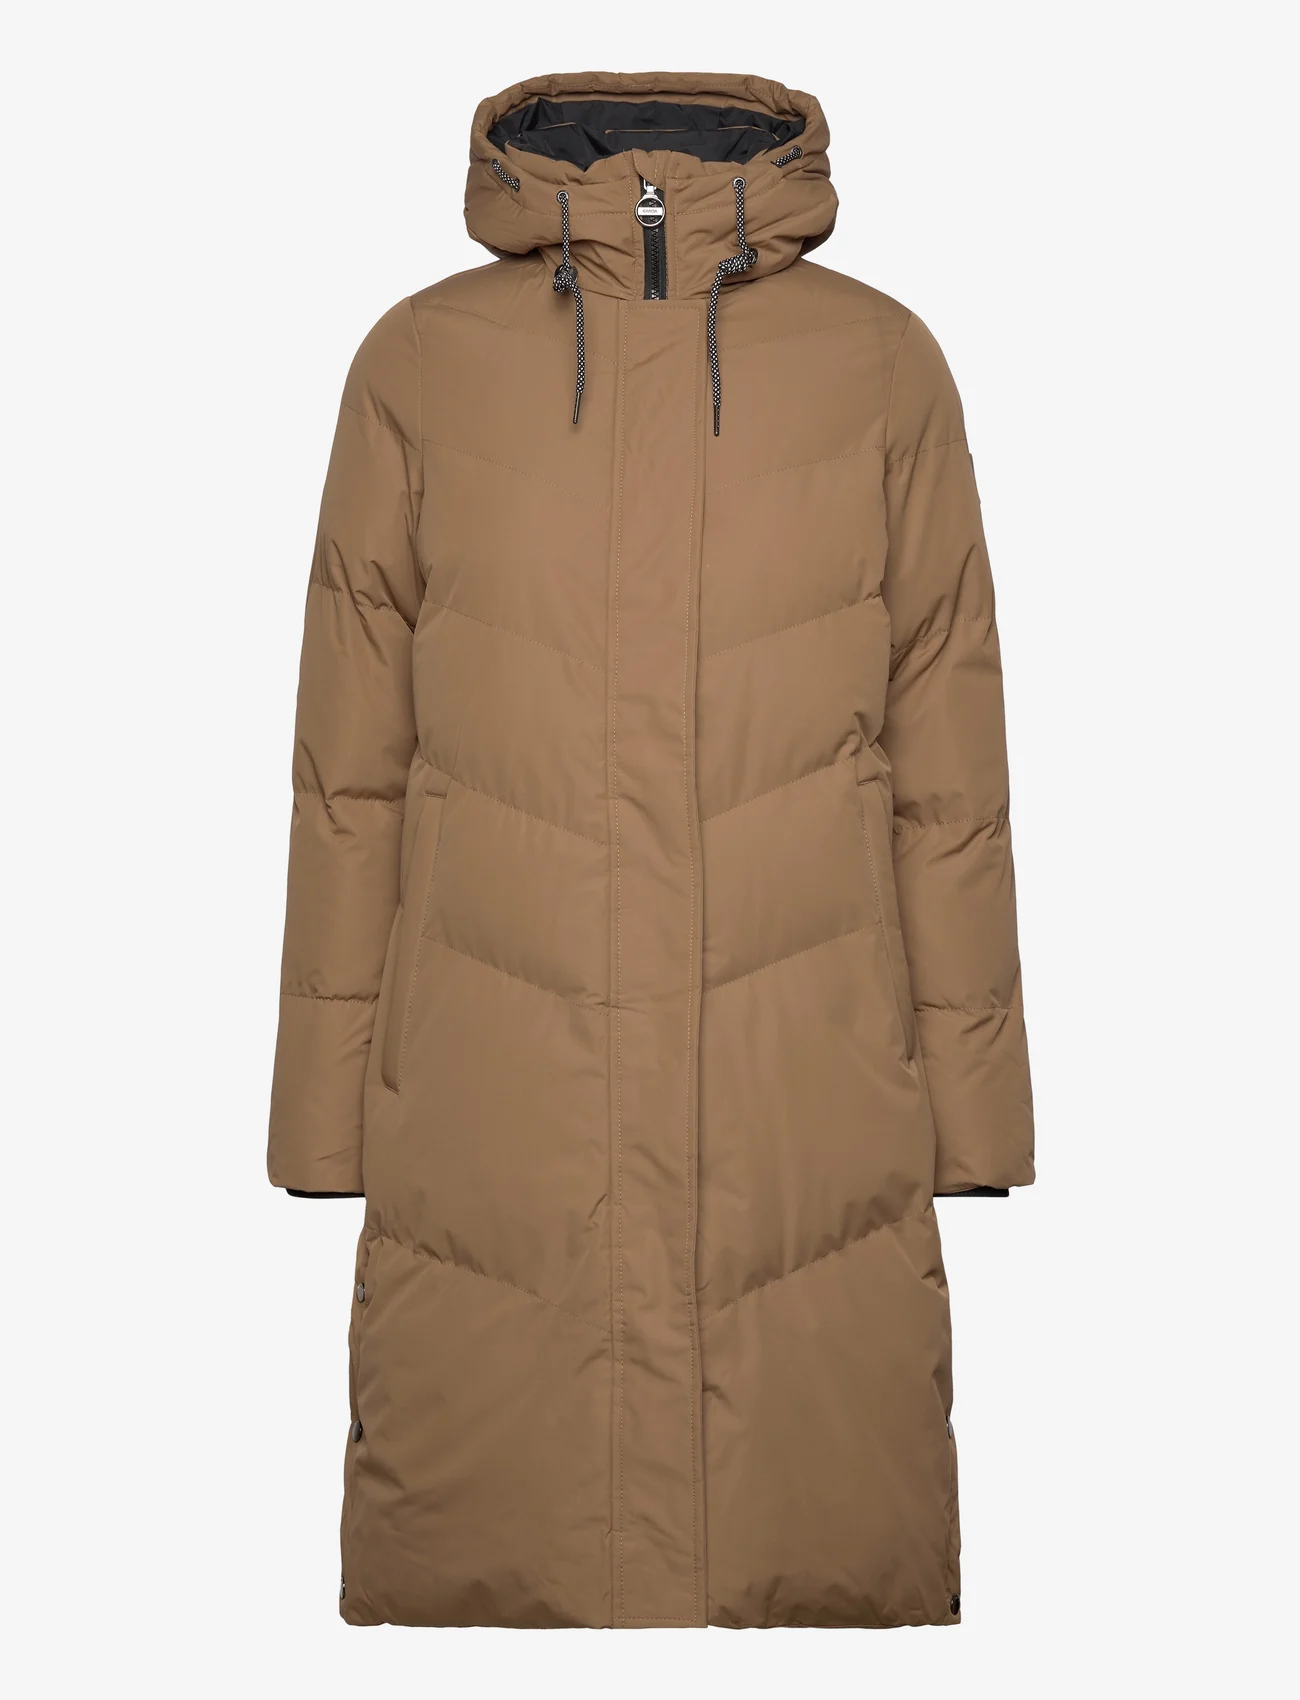 Garcia - ladies outdoor jackets - winterjacken - brown - 0